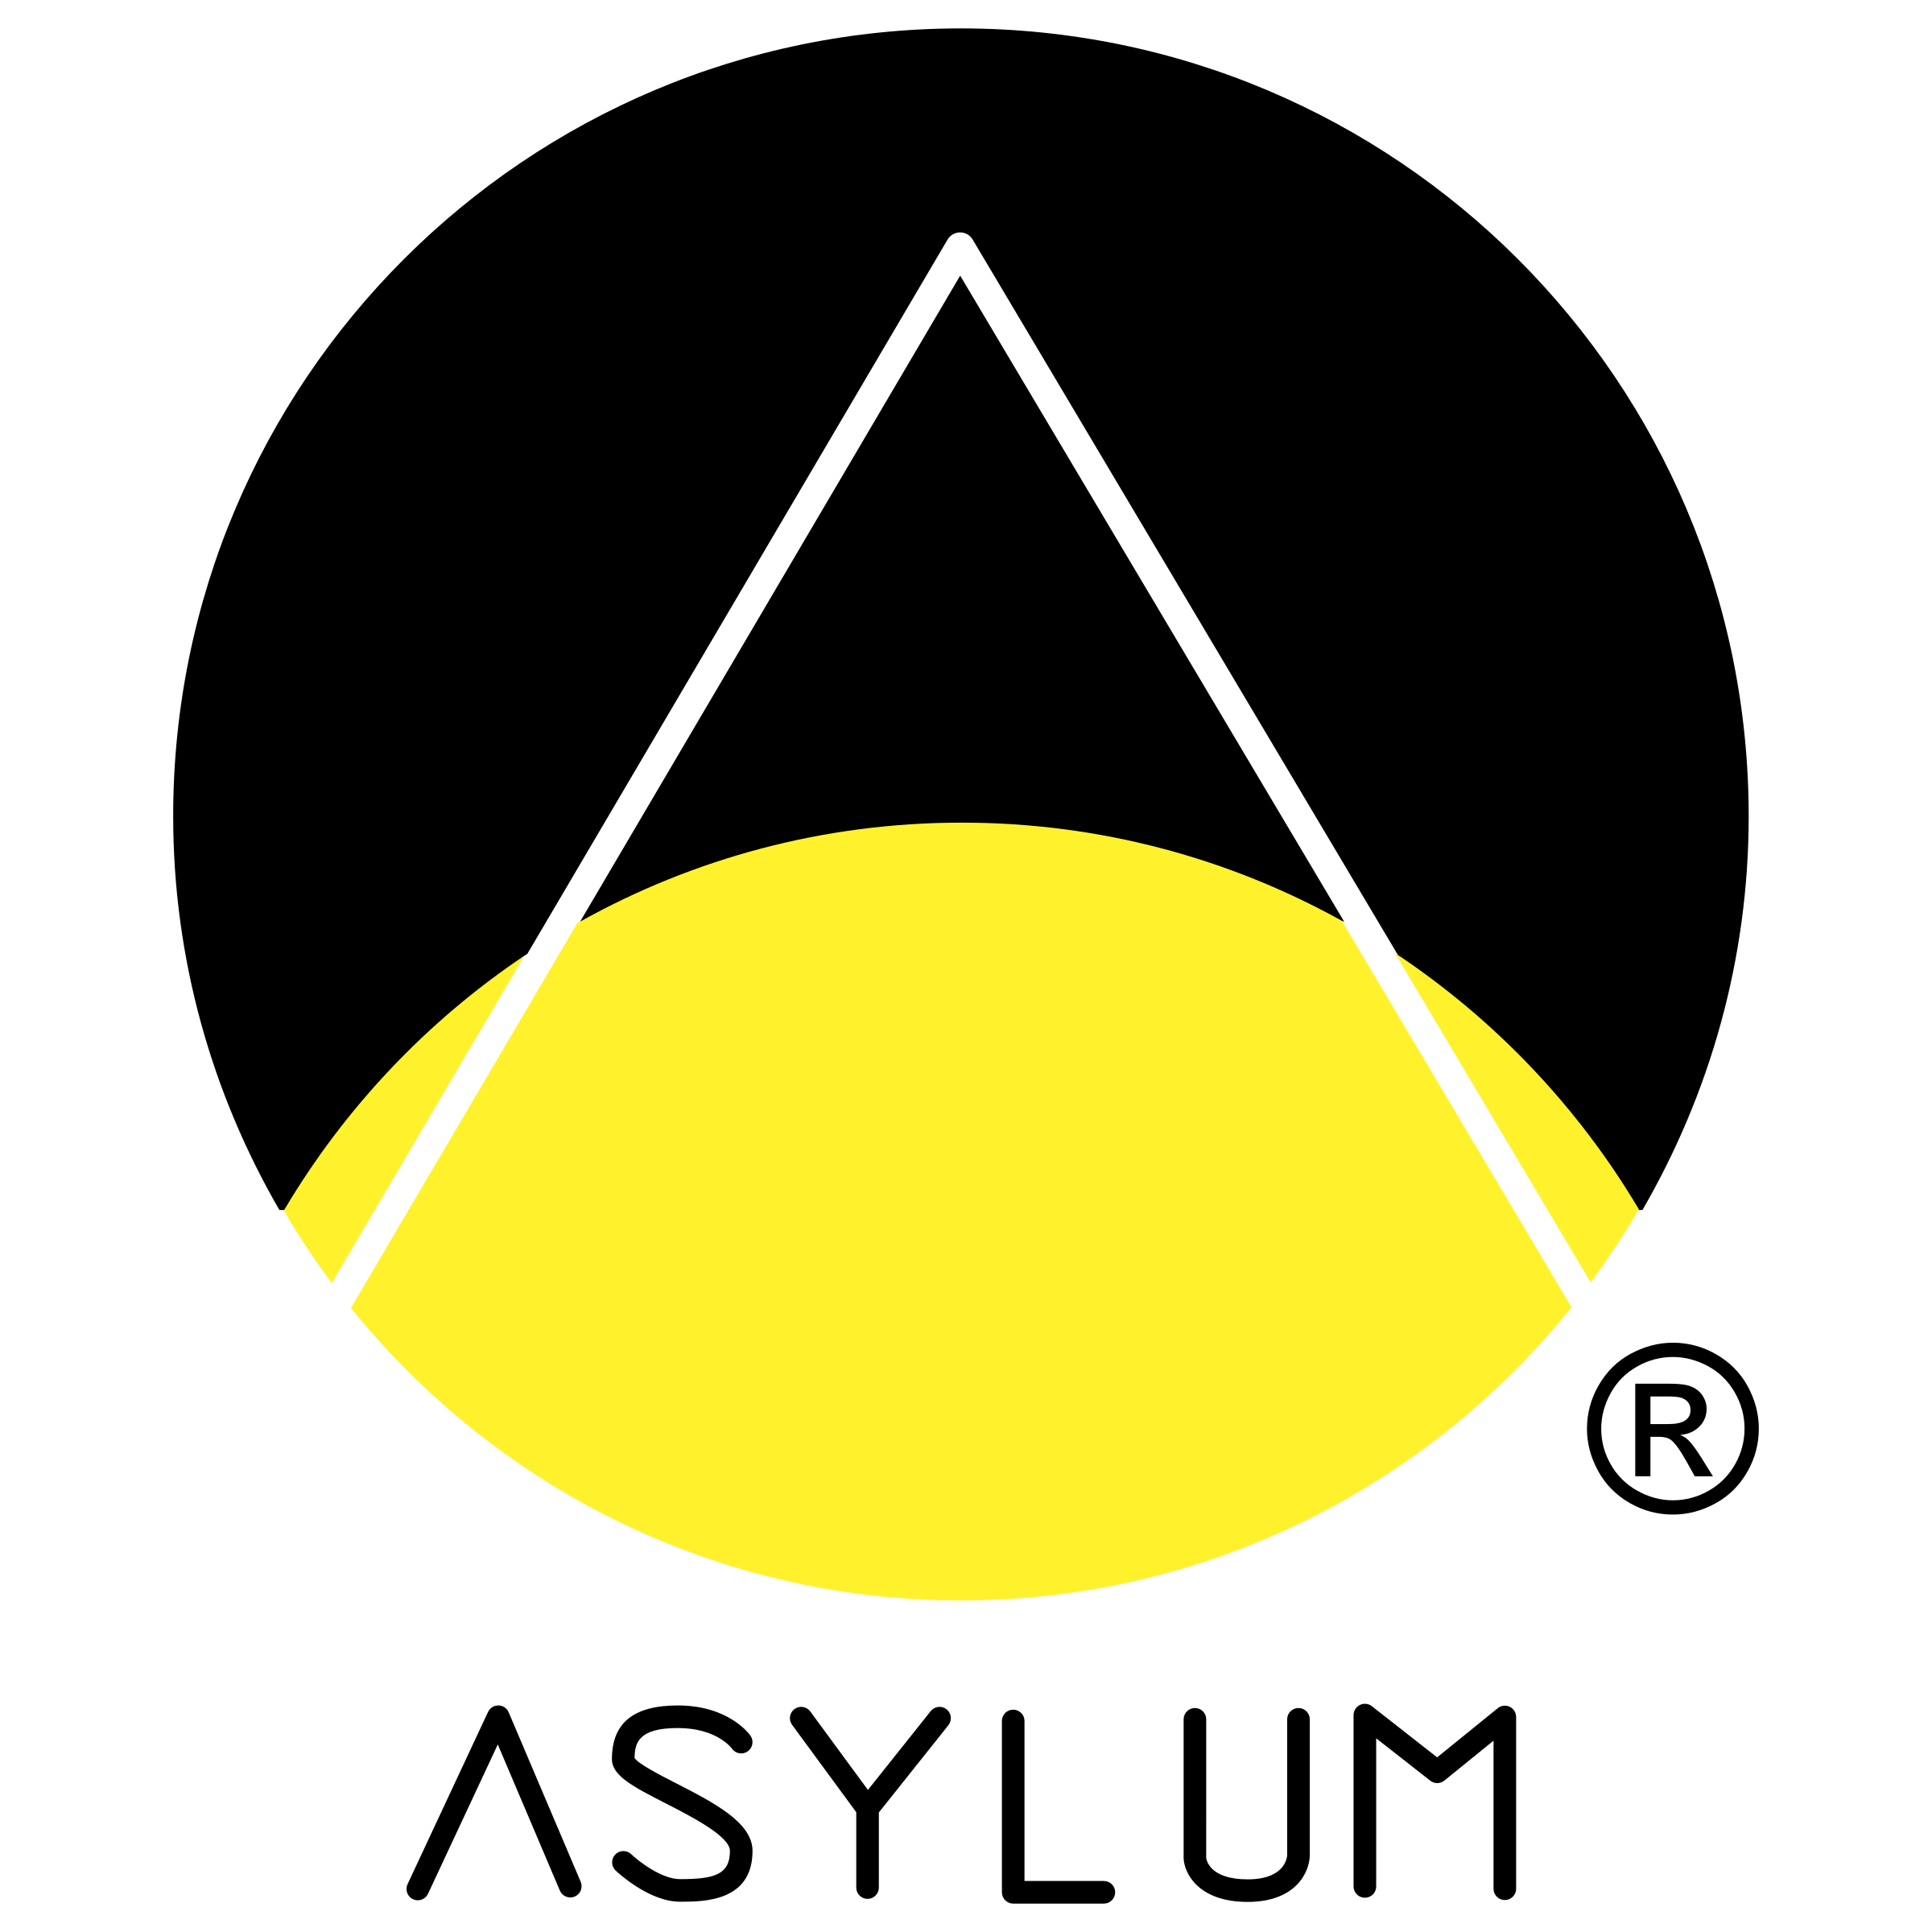 Asylum Logo - Asylum Logo PNG Transparent & SVG Vector